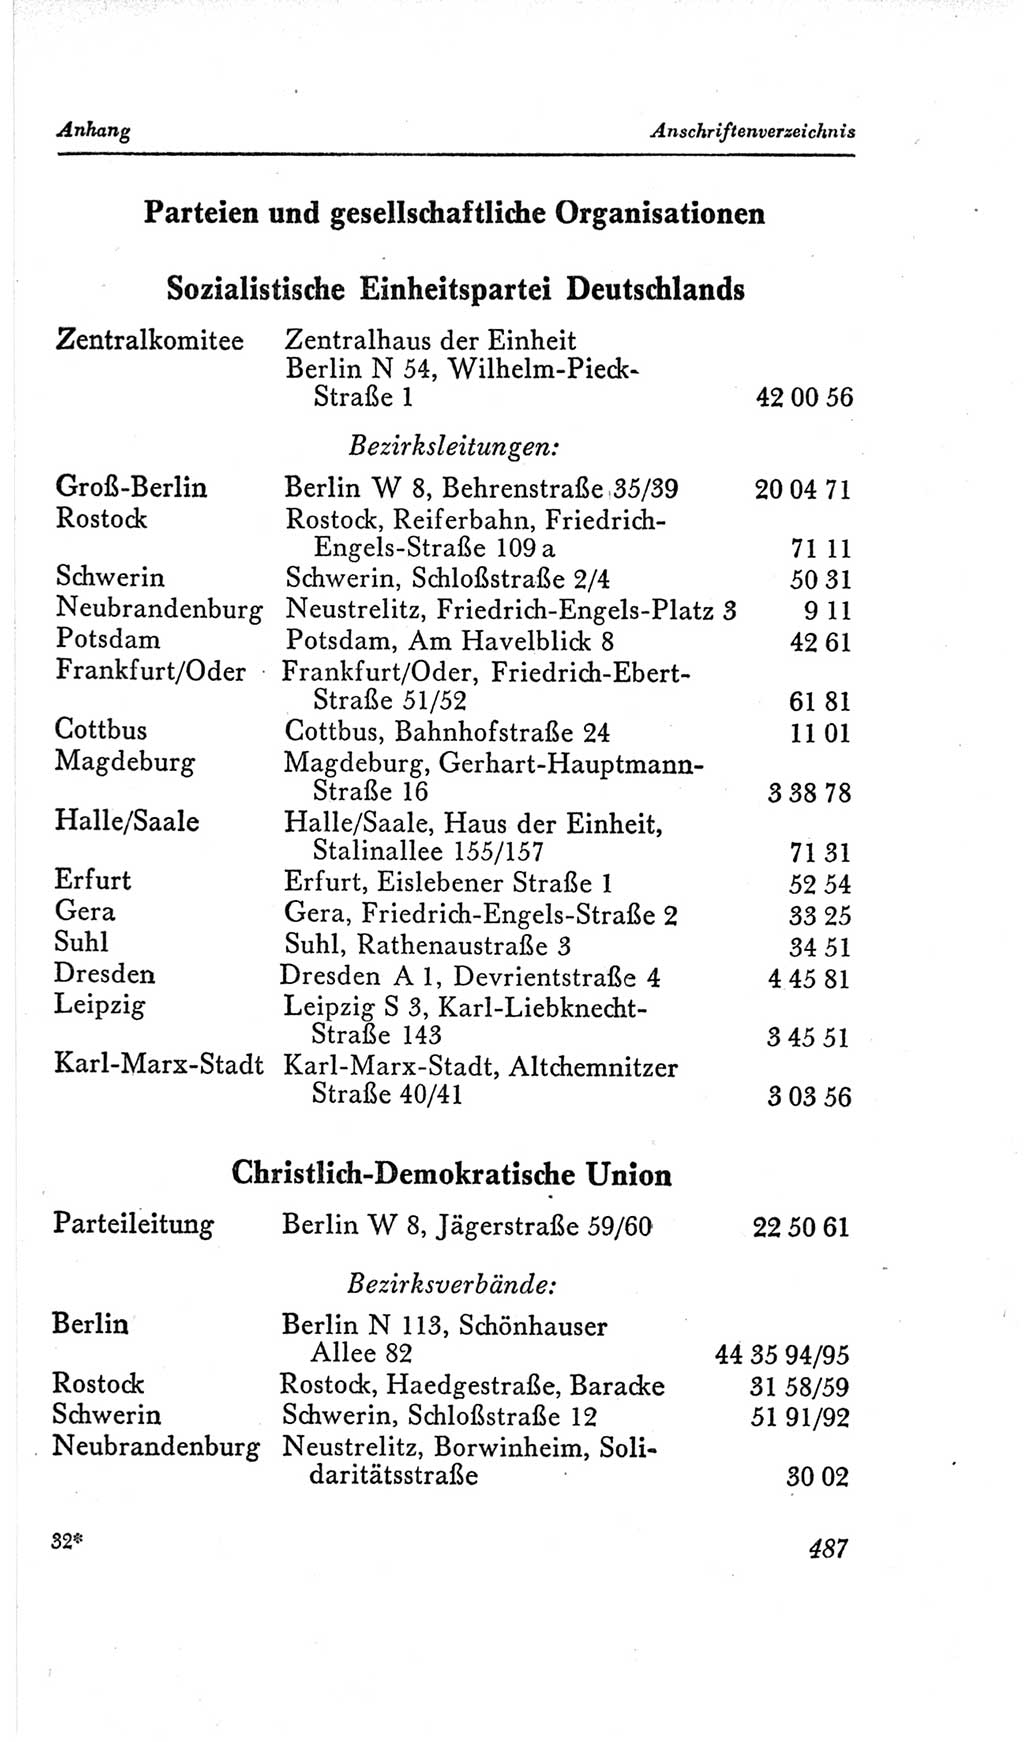 Handbuch der Volkskammer (VK) der Deutschen Demokratischen Republik (DDR), 2. Wahlperiode 1954-1958, Seite 487 (Hdb. VK. DDR, 2. WP. 1954-1958, S. 487)